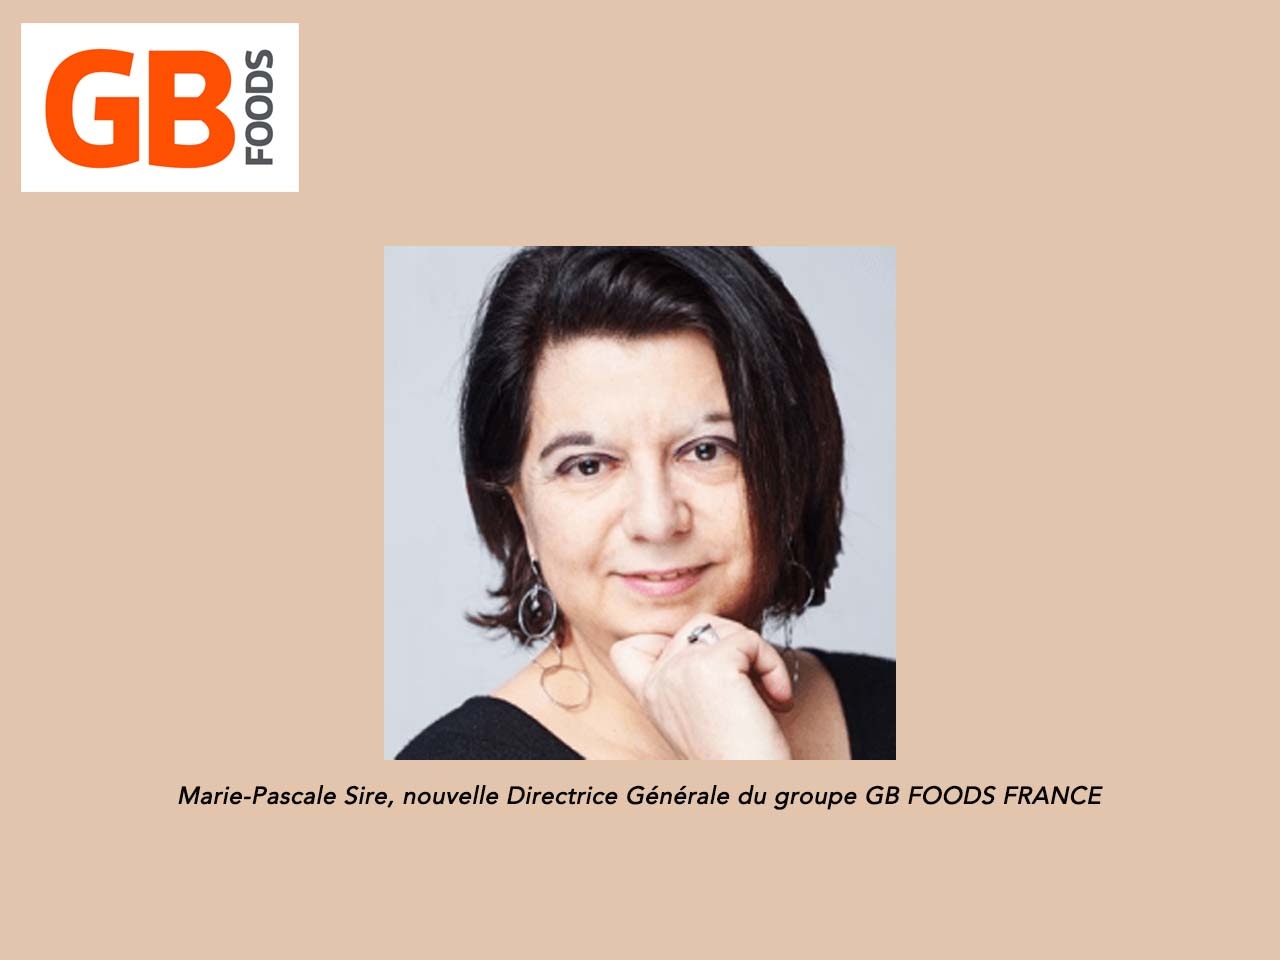 Marie-Pascale Sire est nommée Directrice Générale du groupe GB FOODS FRANCE